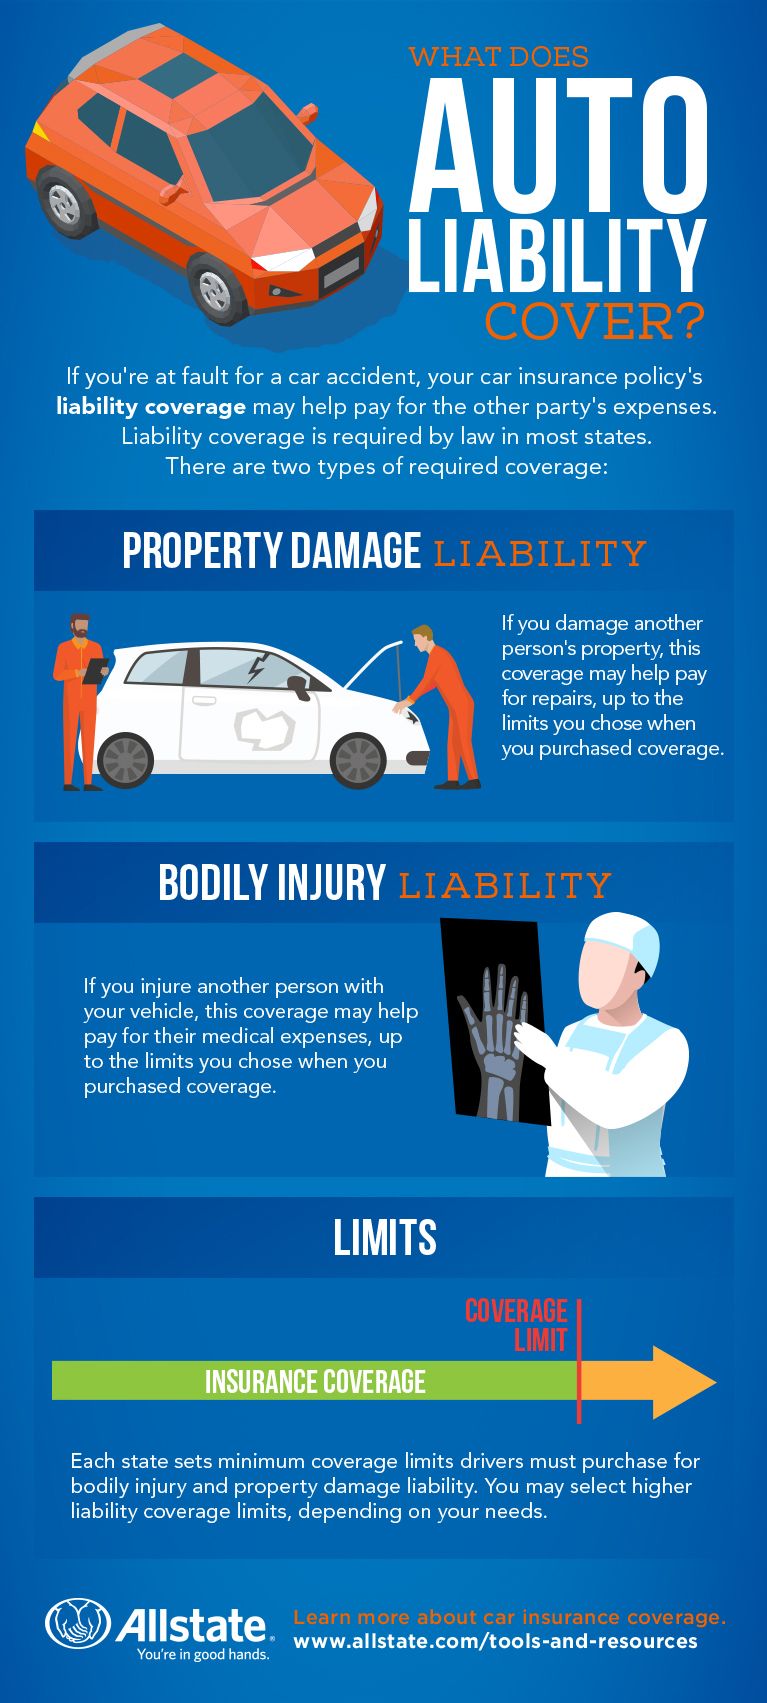 Personal Auto Liability Coverage